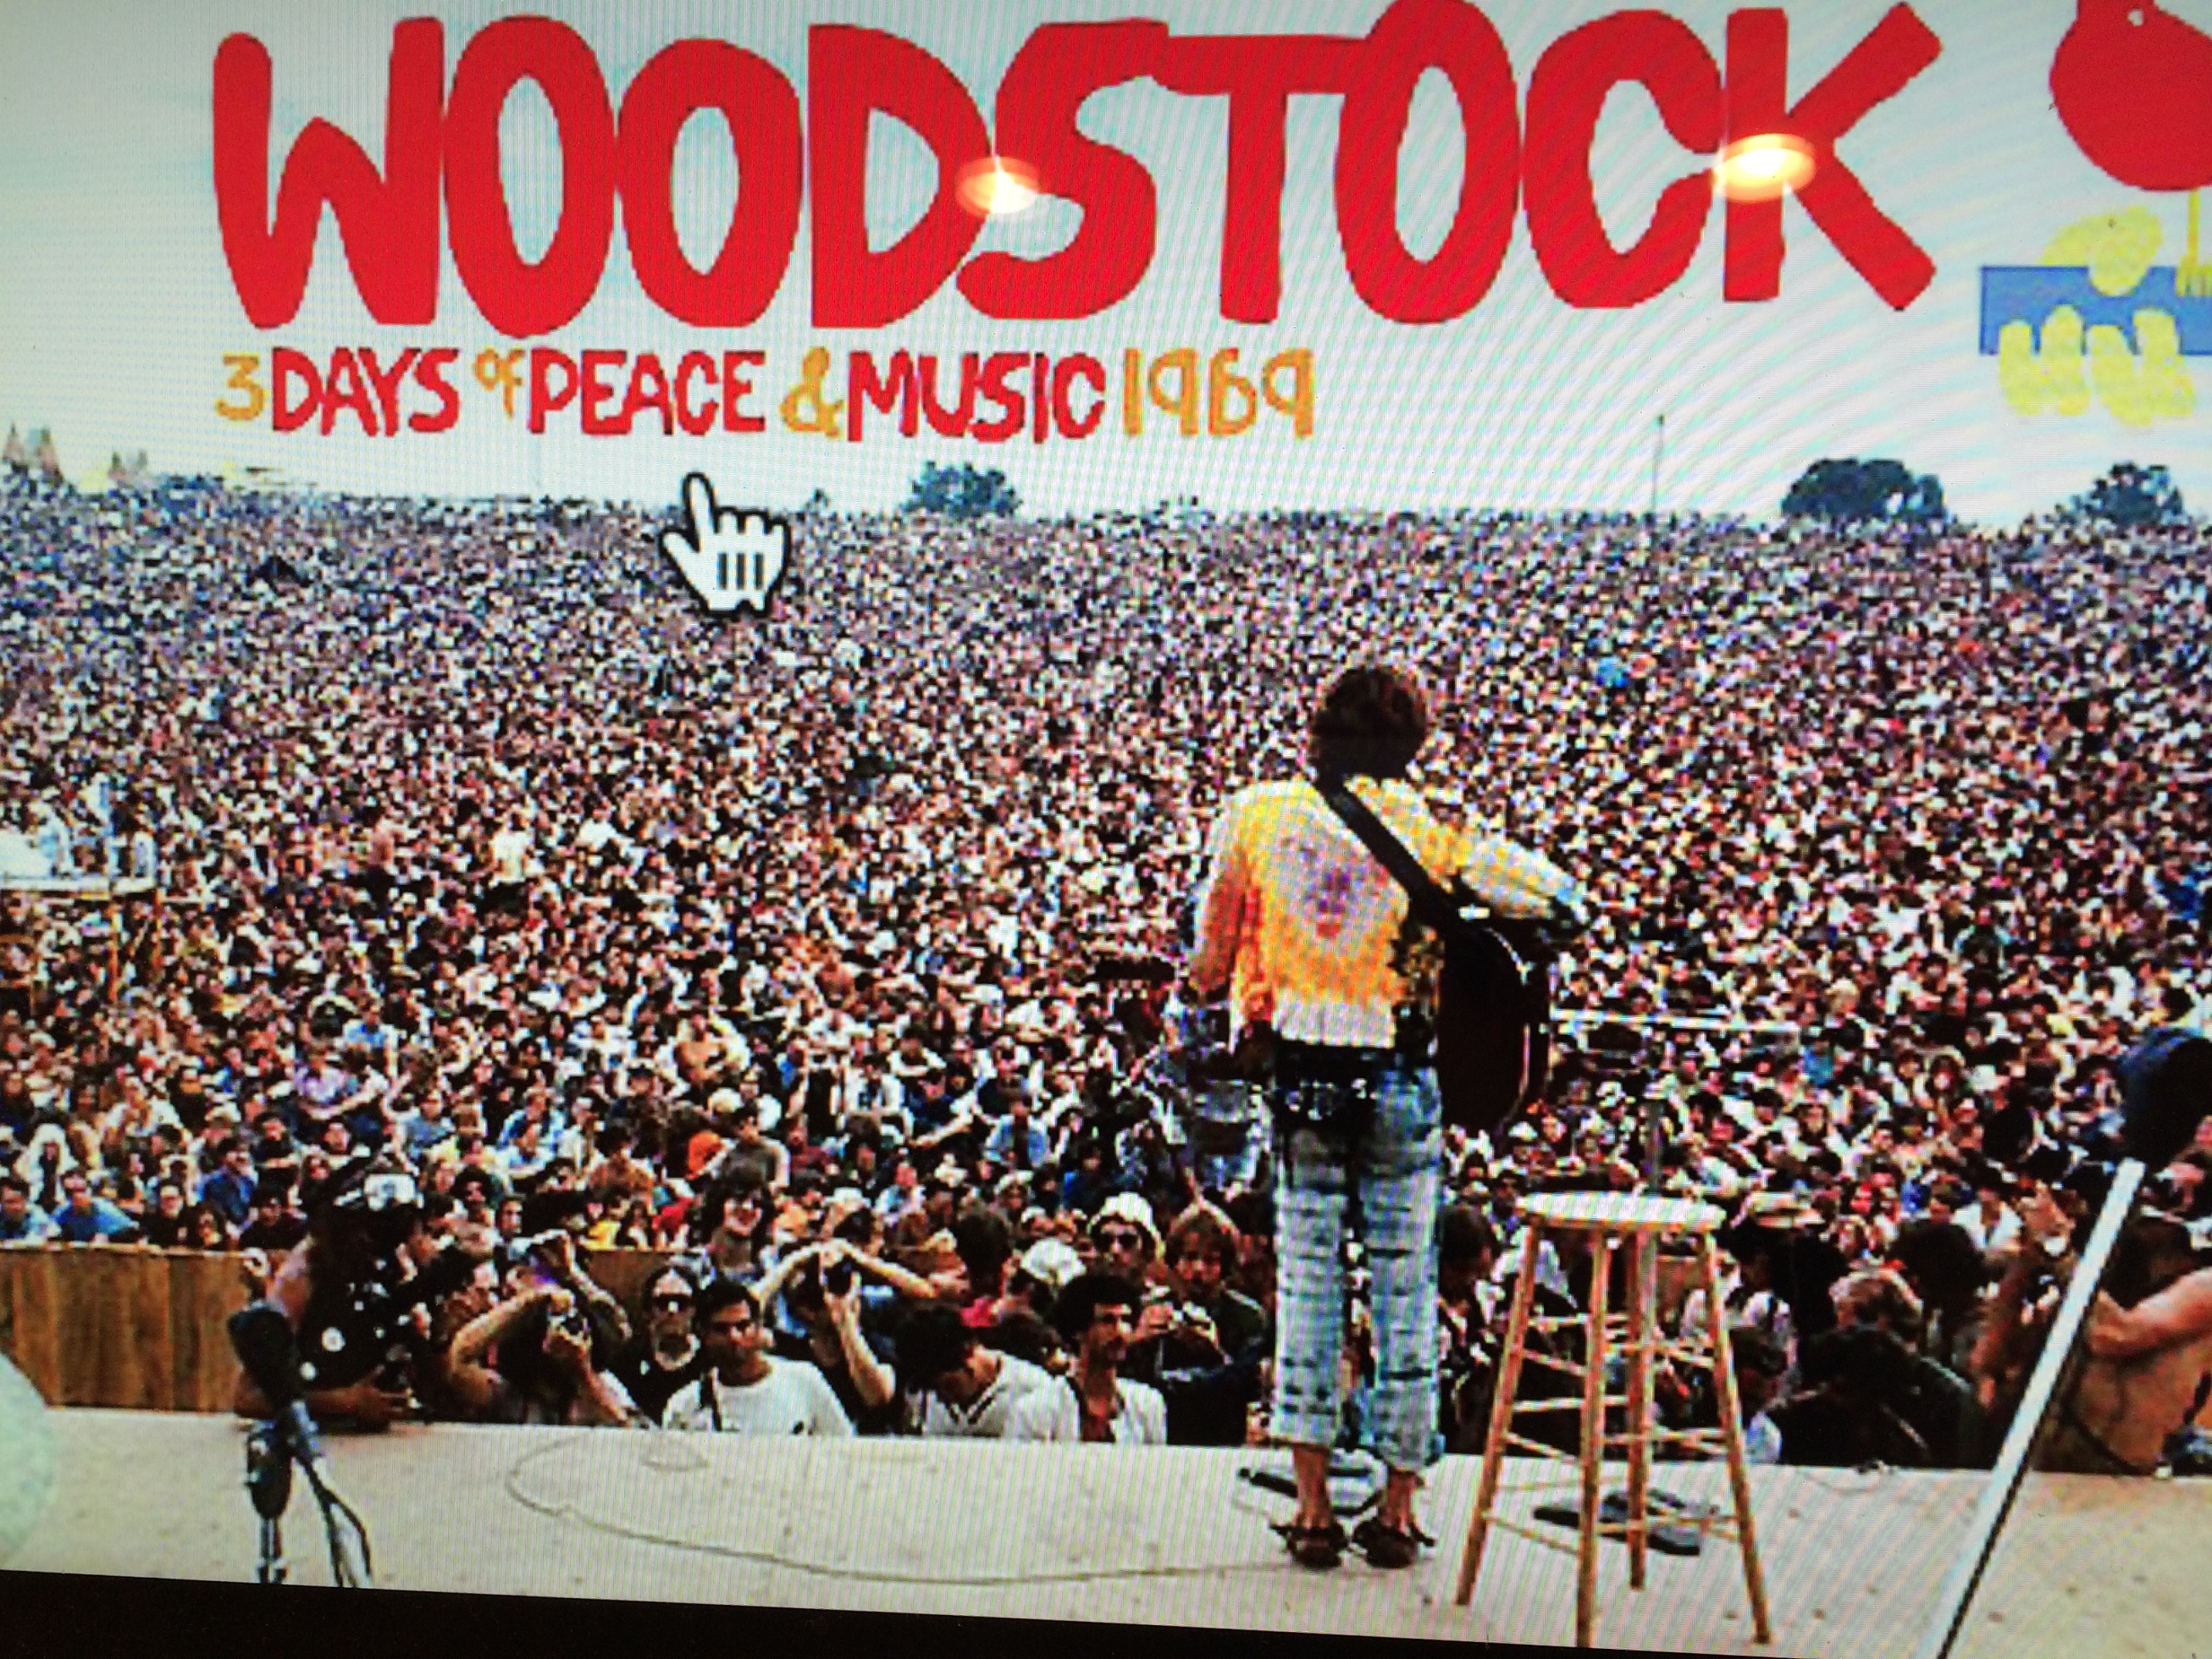 Santana Woodstock Performance Memories